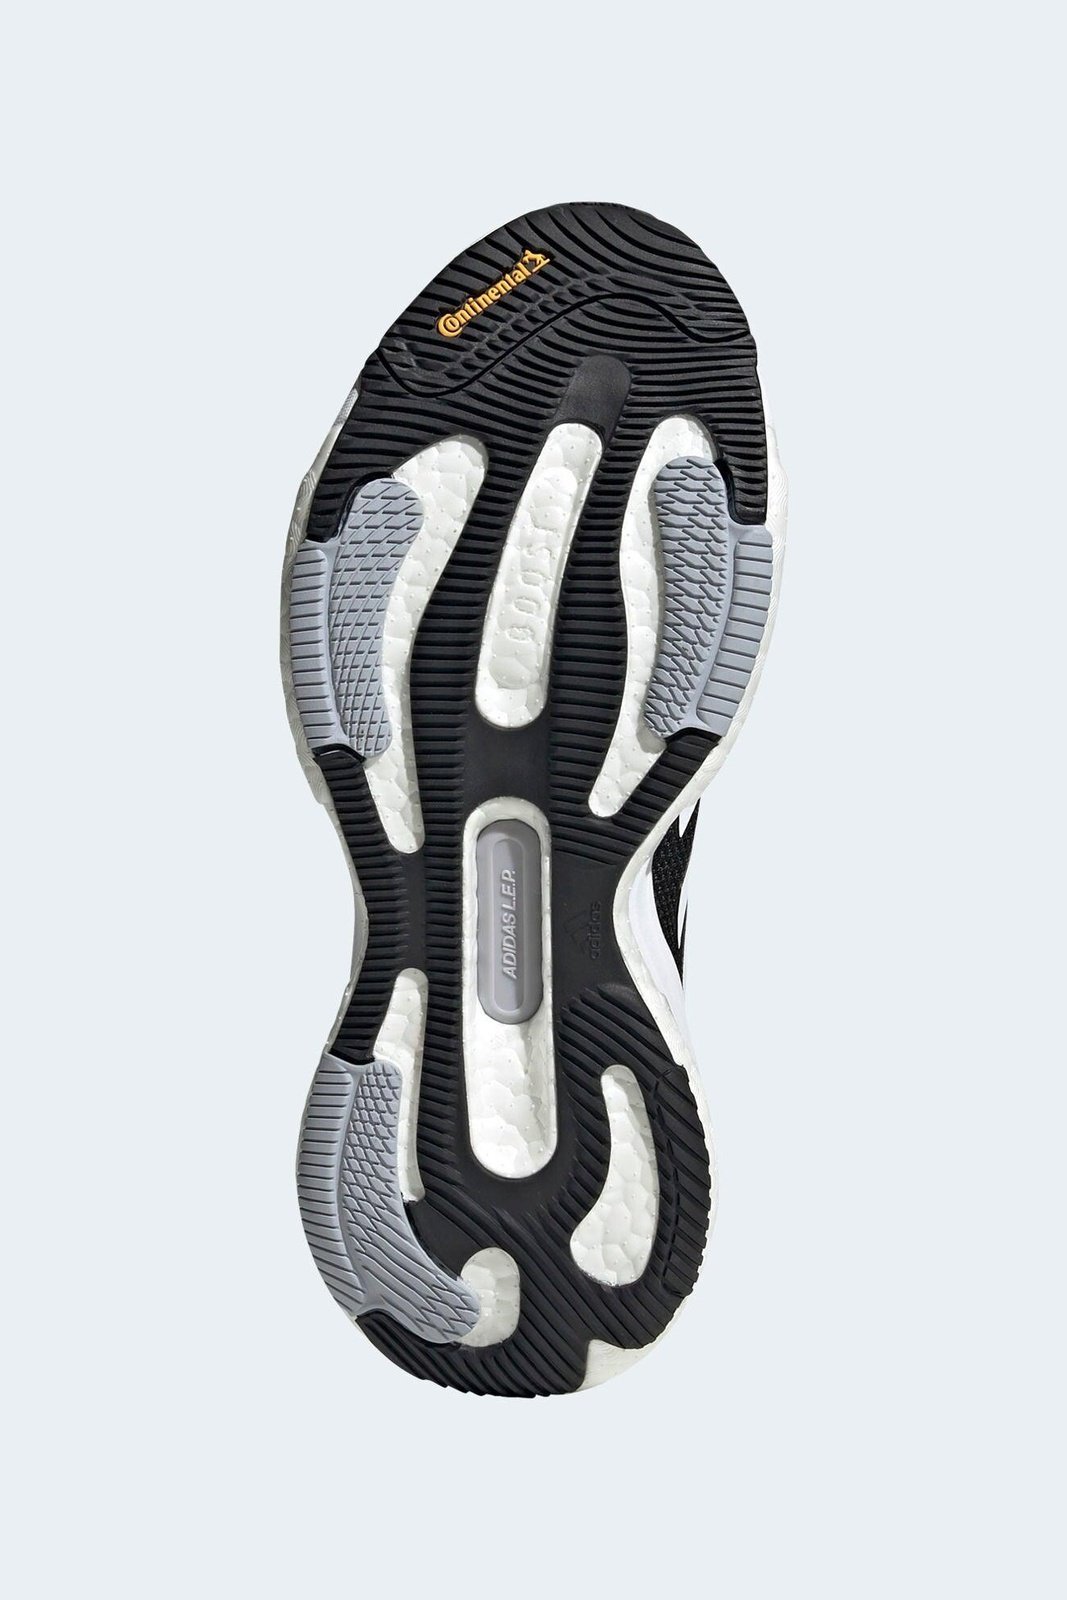 ADIDAS - נעלי ספורט לנשים SOLAR GLIDE 5 בצבע שחור - MASHBIR//365